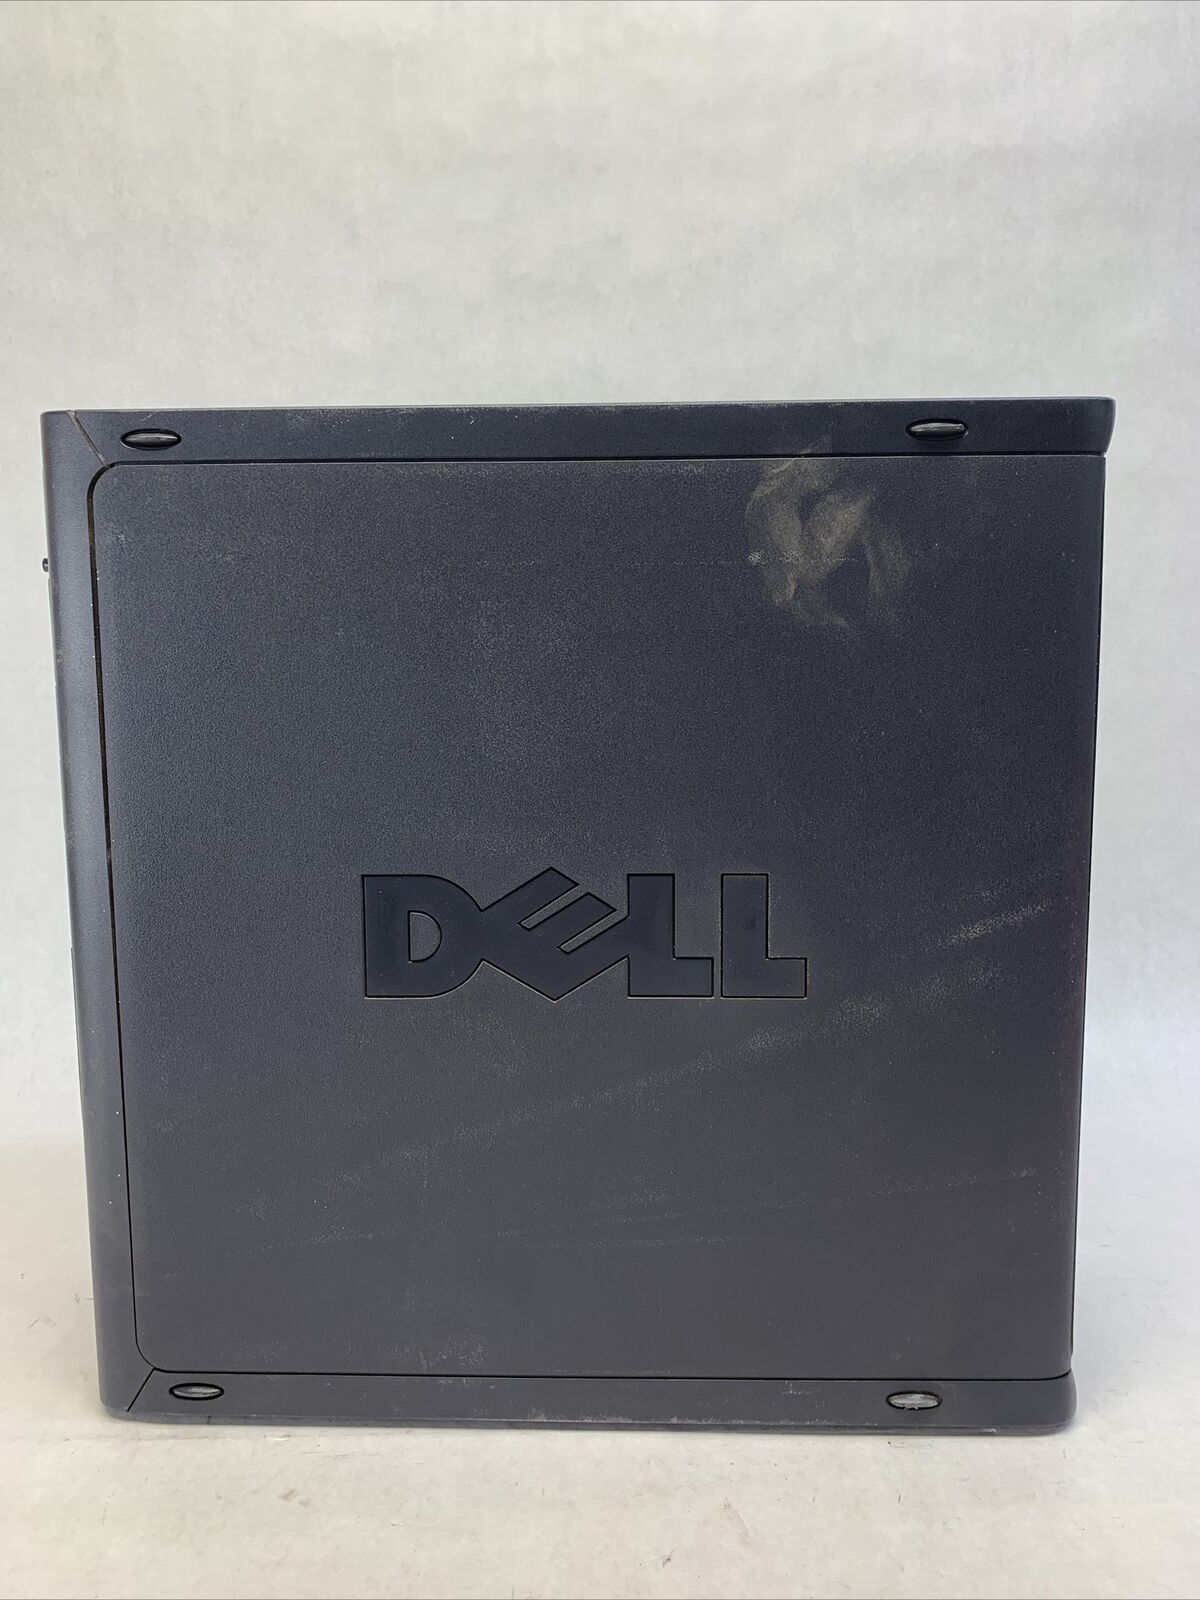 Dell Optiplex GX260 MT Intel Pentium 4 2GHz 1GB RAM No HDD No OS w/04-2488-001